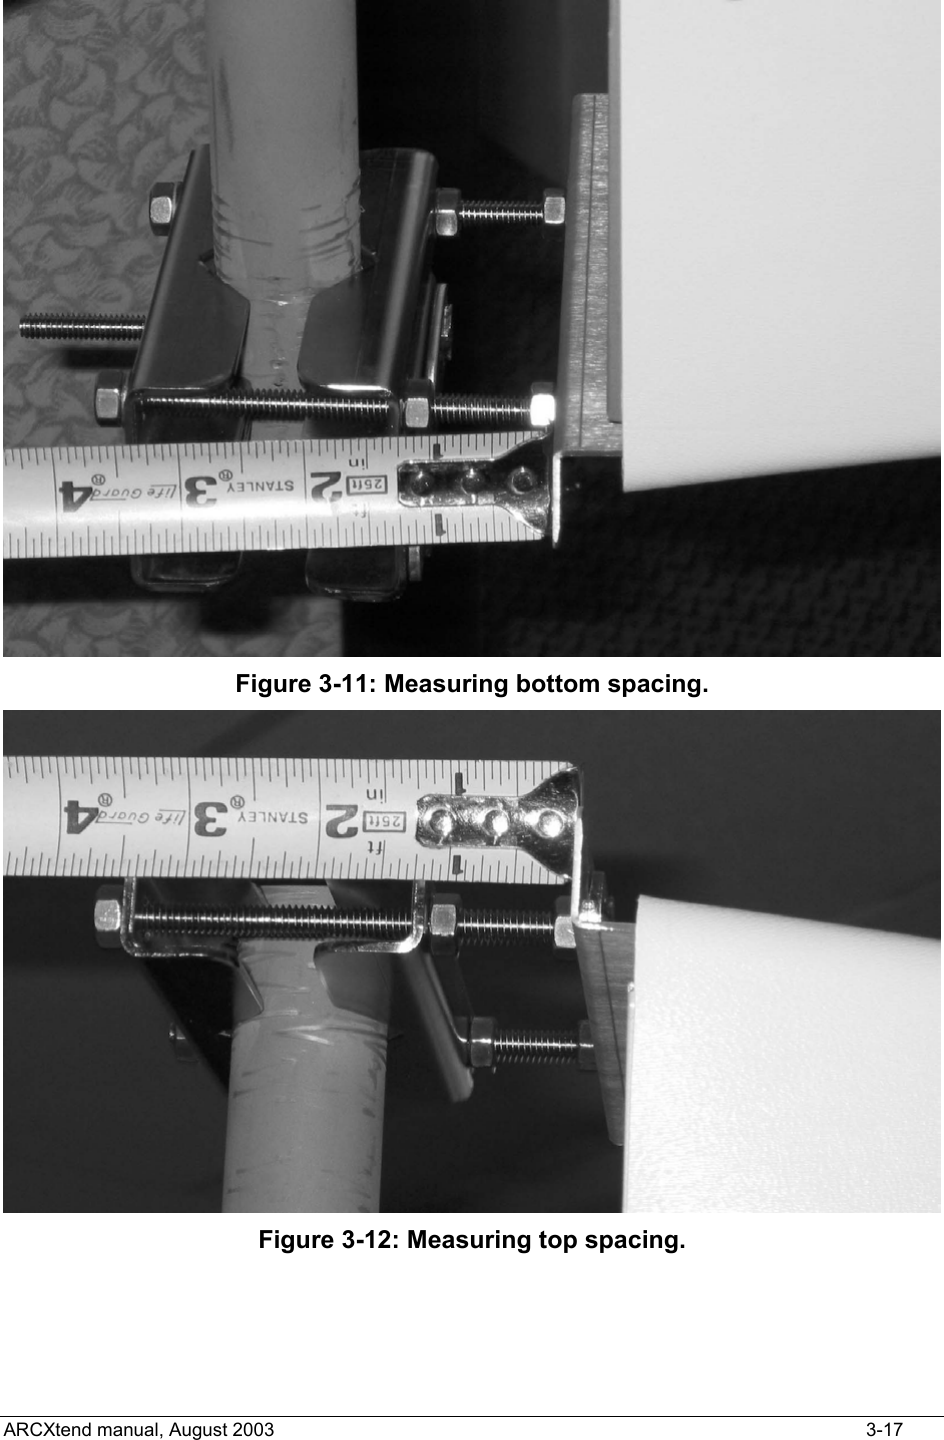   Figure 3-11: Measuring bottom spacing.  Figure 3-12: Measuring top spacing.   ARCXtend manual, August 2003    3-17 